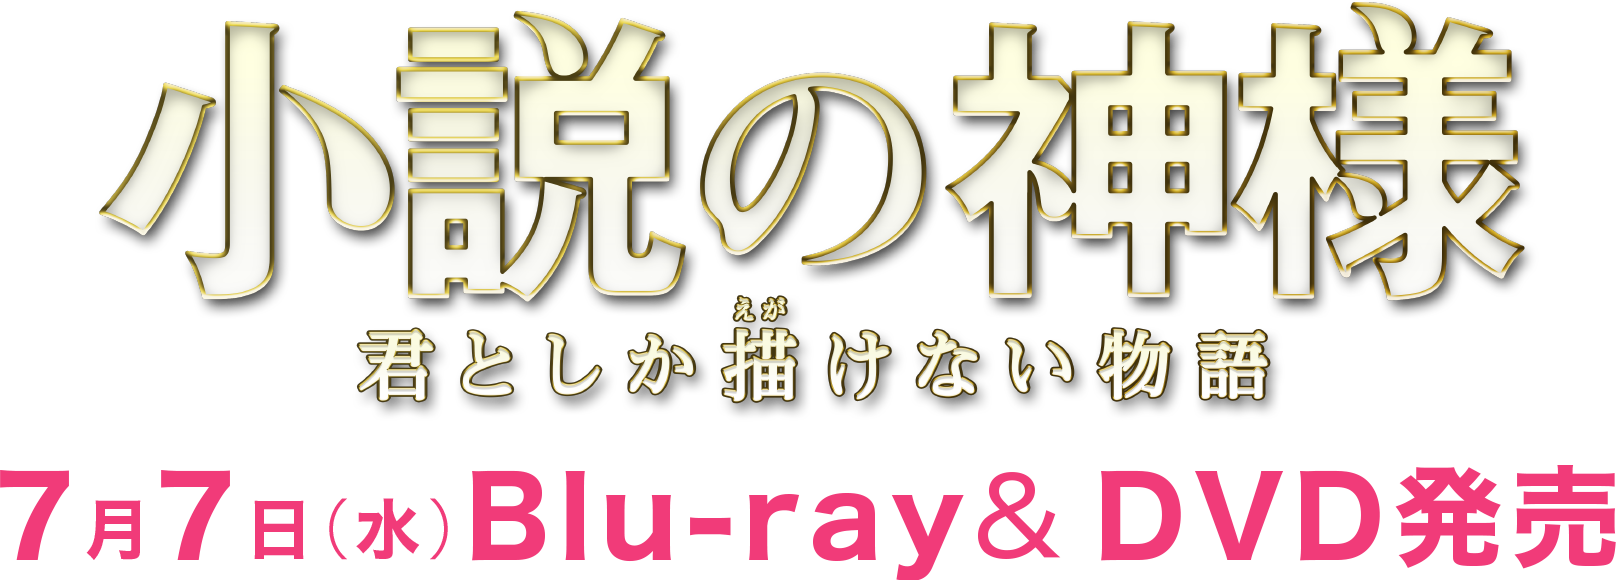 小説の神様 君としか描けない物語 7月7日（水）Blu-ray&DVD発売